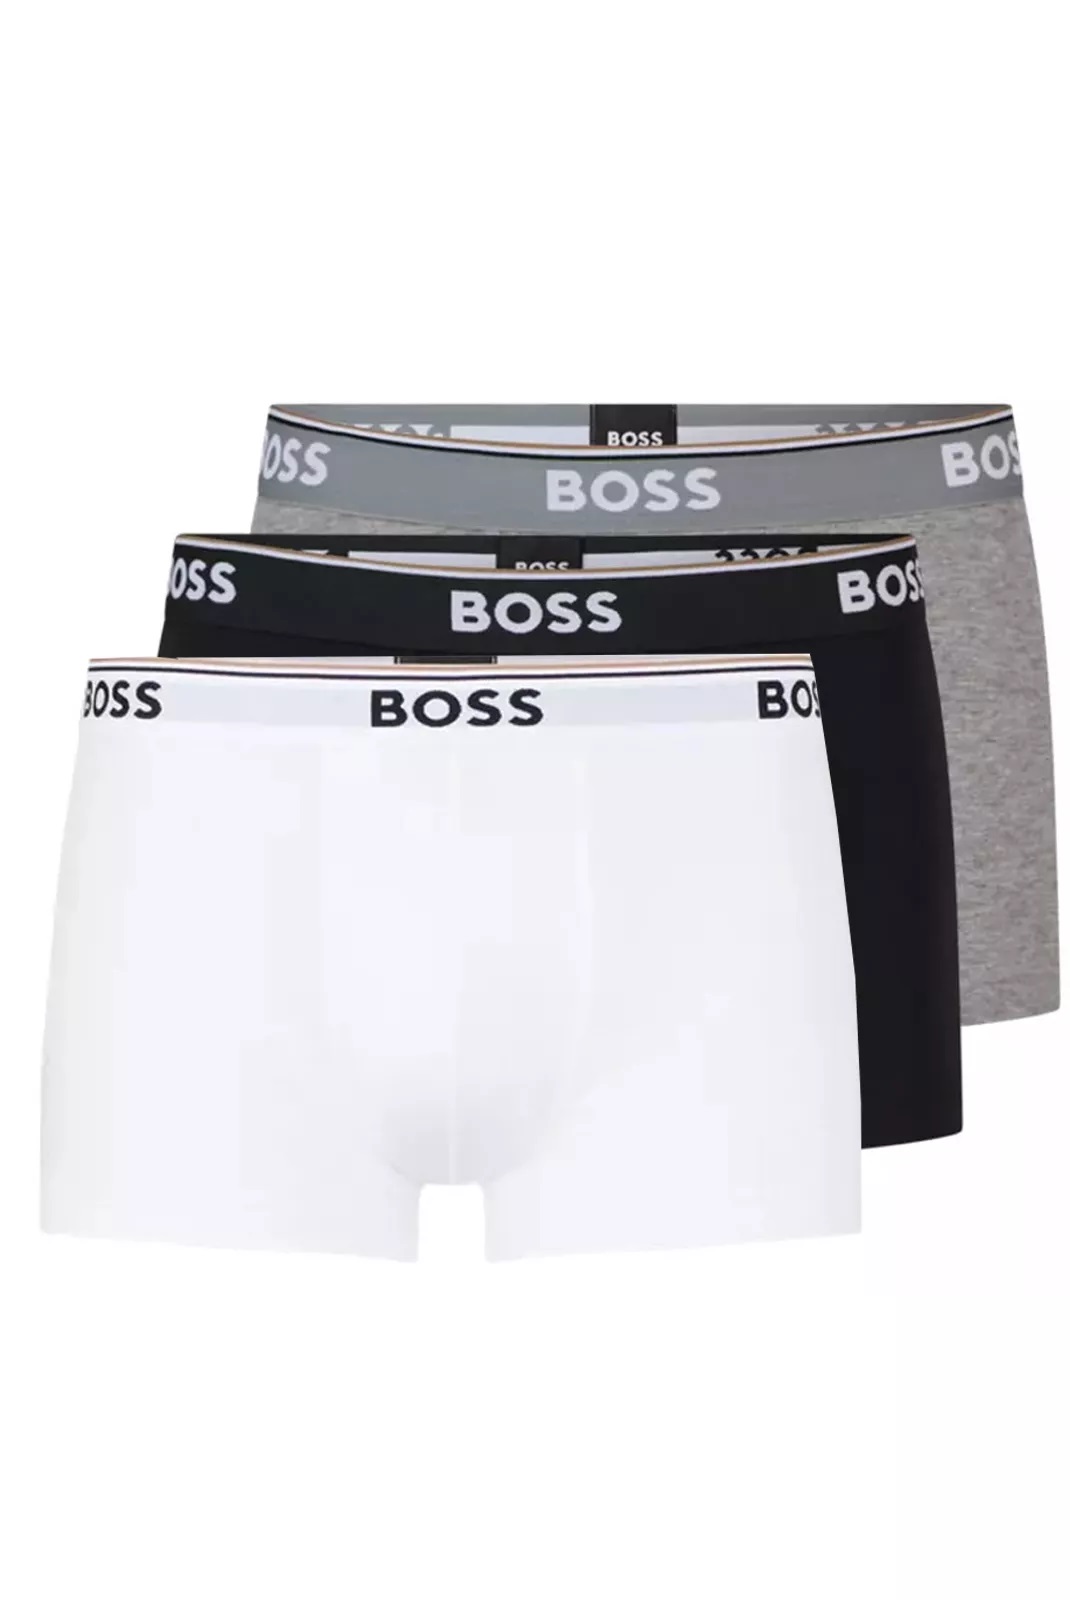 Hugo Boss pánské boxerky 3pack černé, šedé, bílé Velikost: XXL